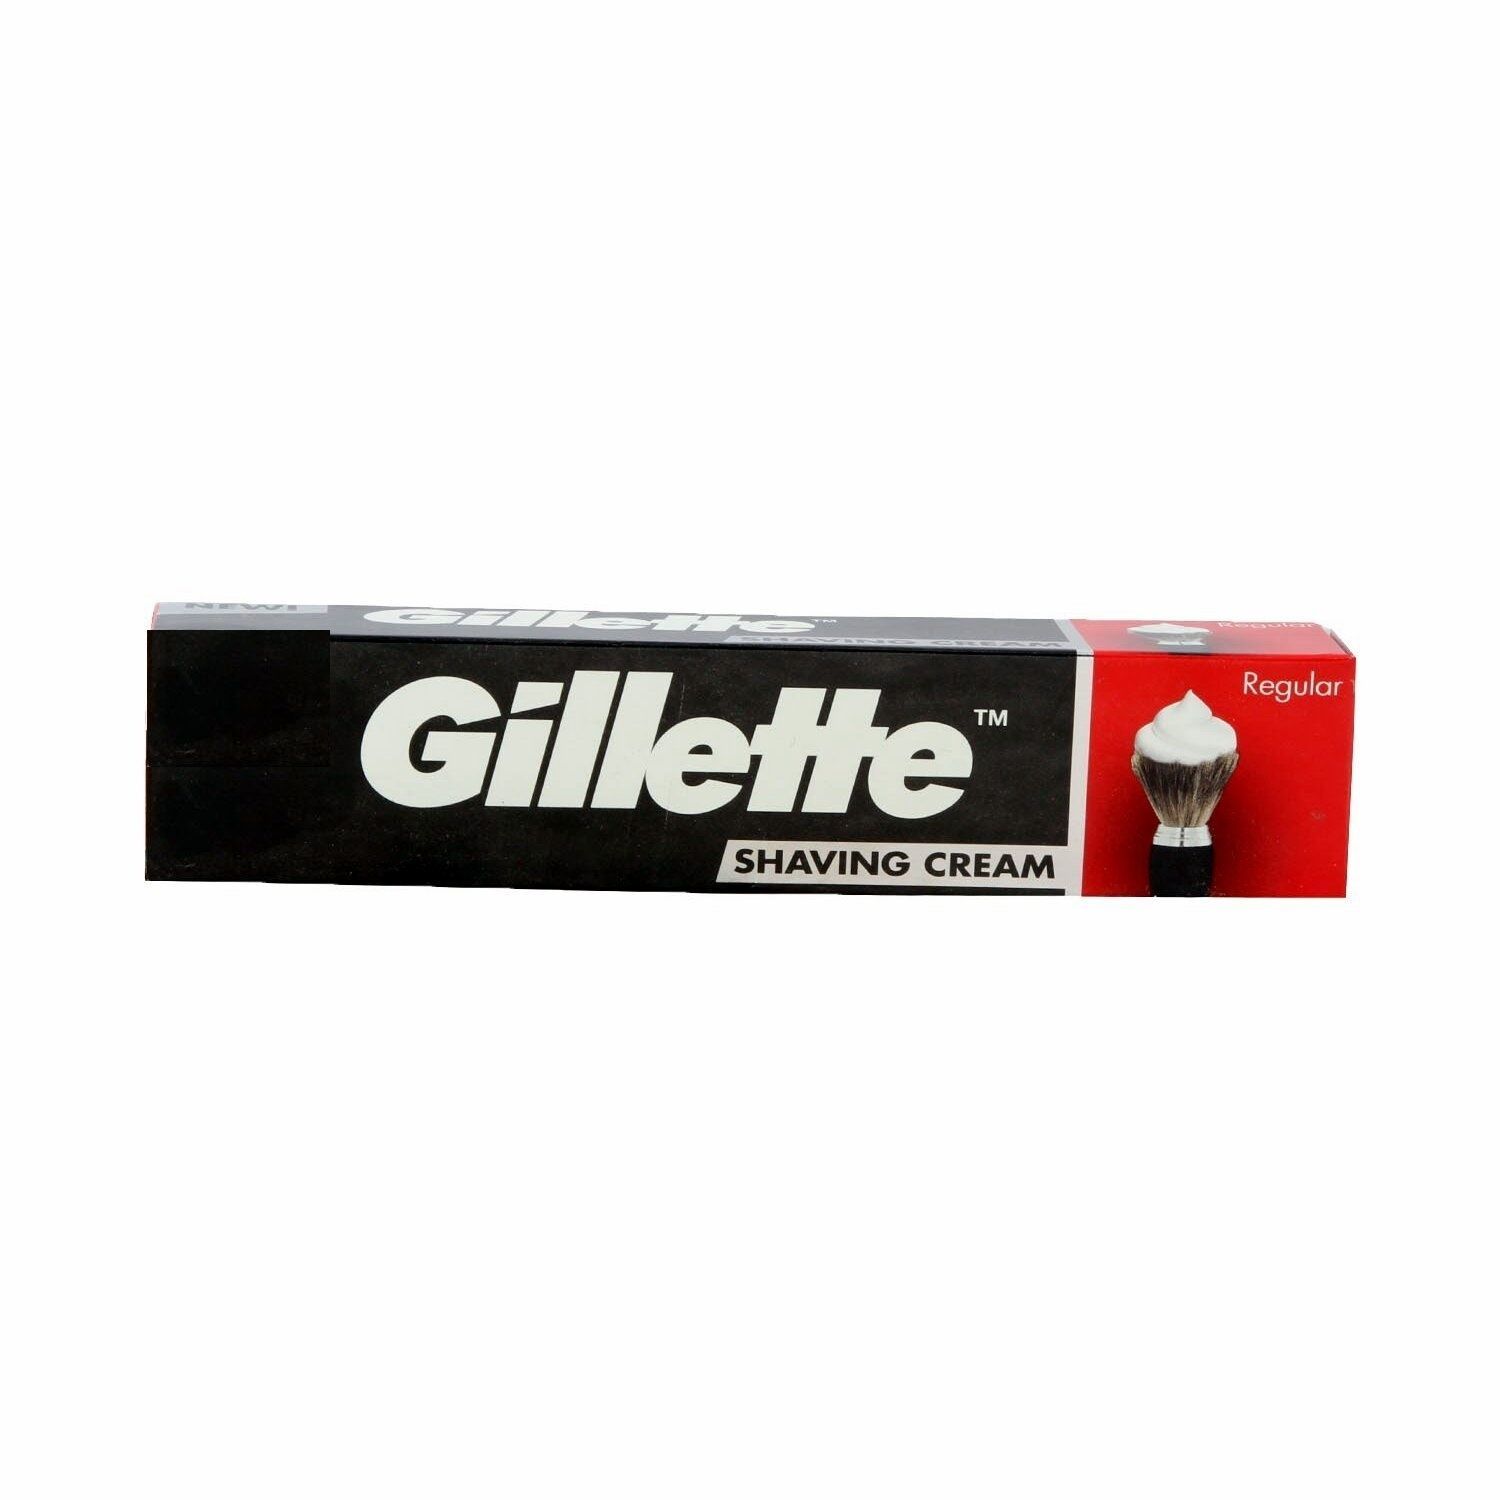 Gillette Shaving Cream - Regular